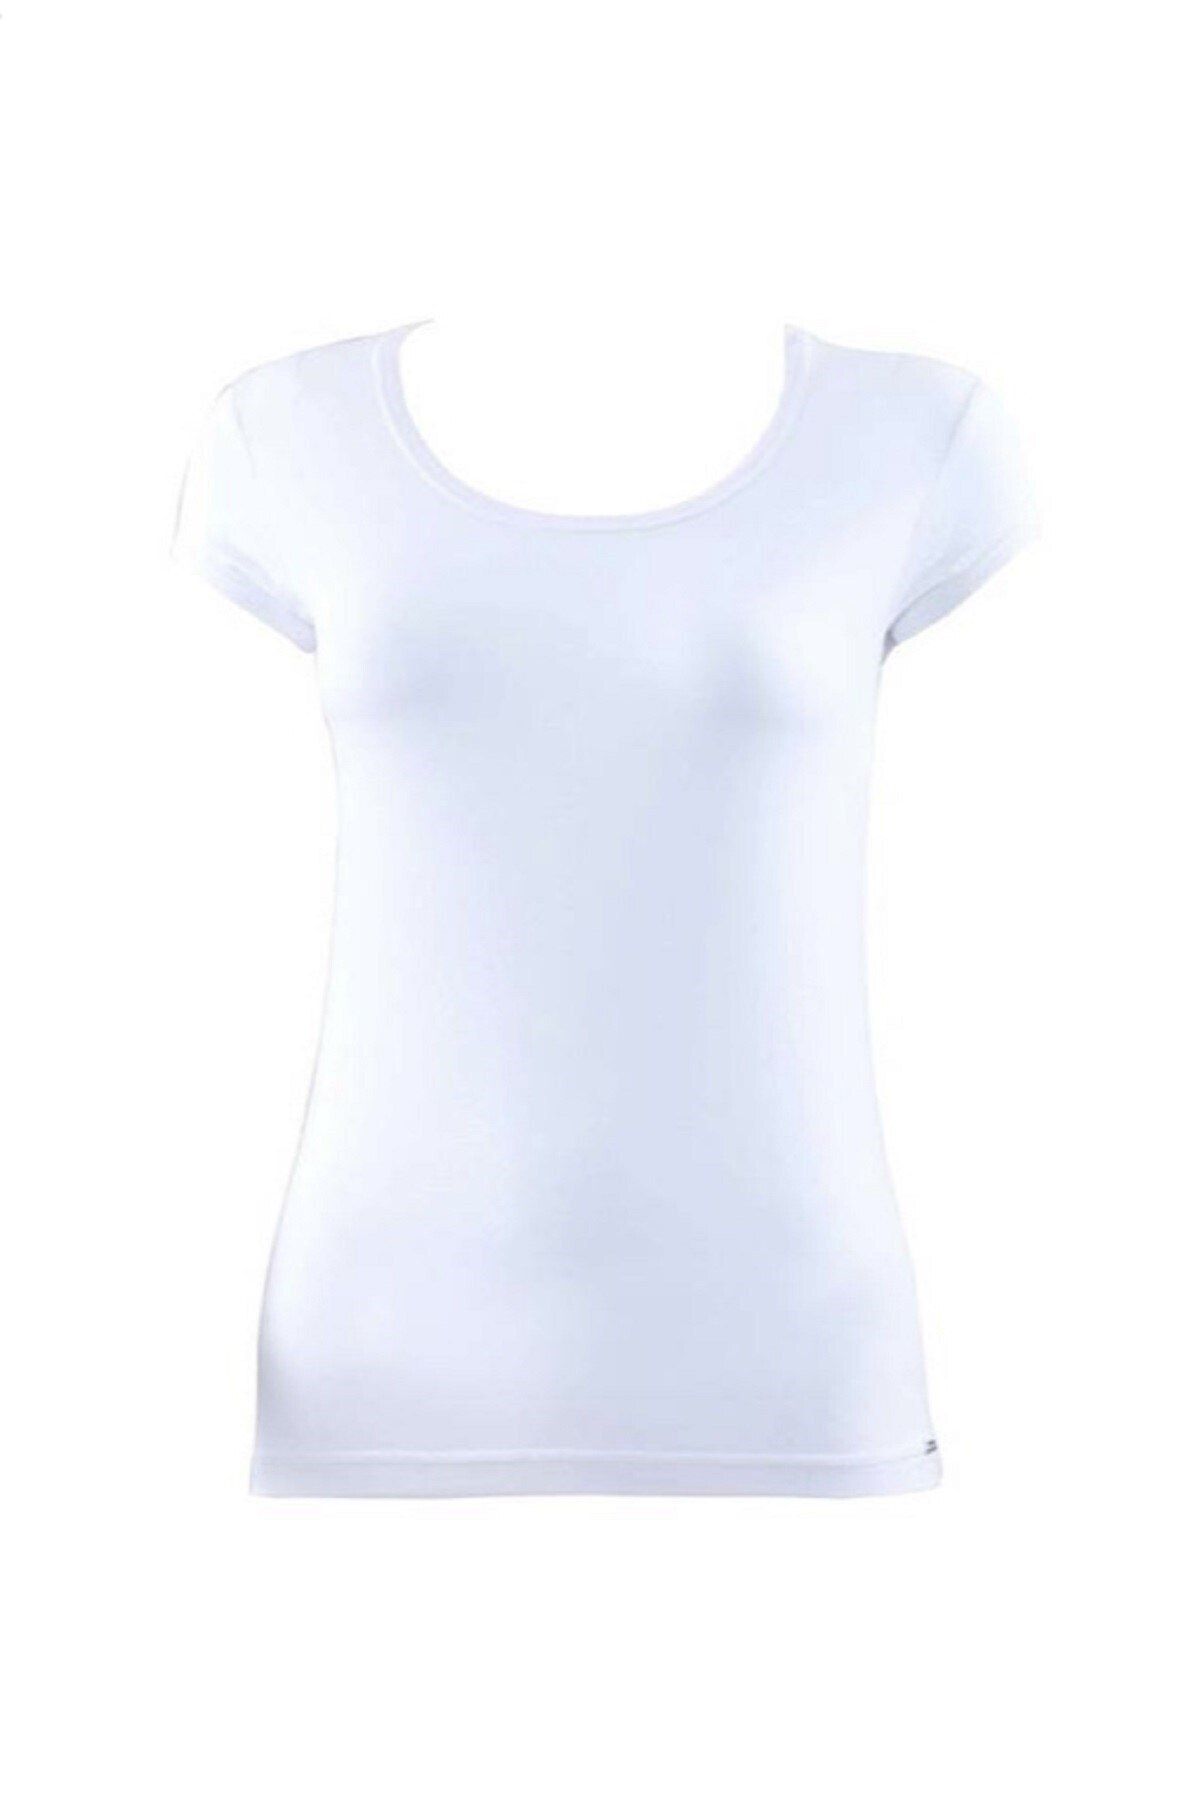 Blackspade Kadın Beyaz %94 Modal Nefes Alan Tshirt